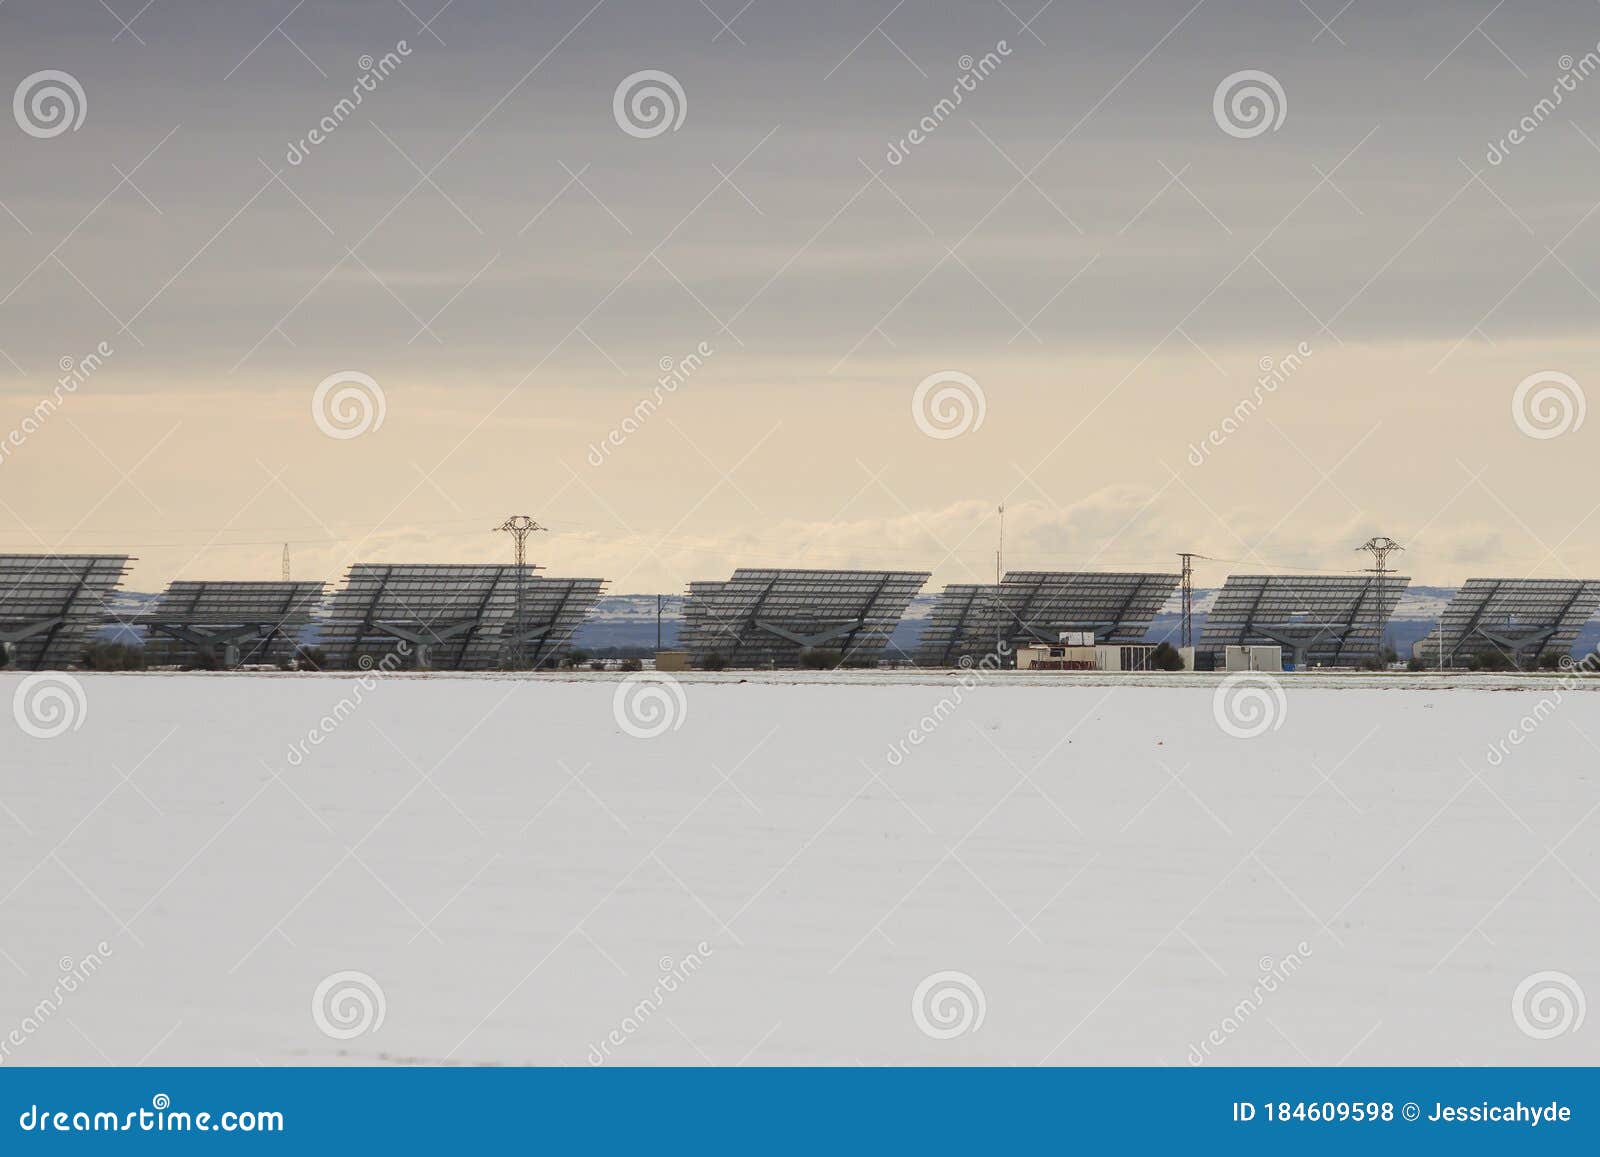 solar pannels in snowy landscape